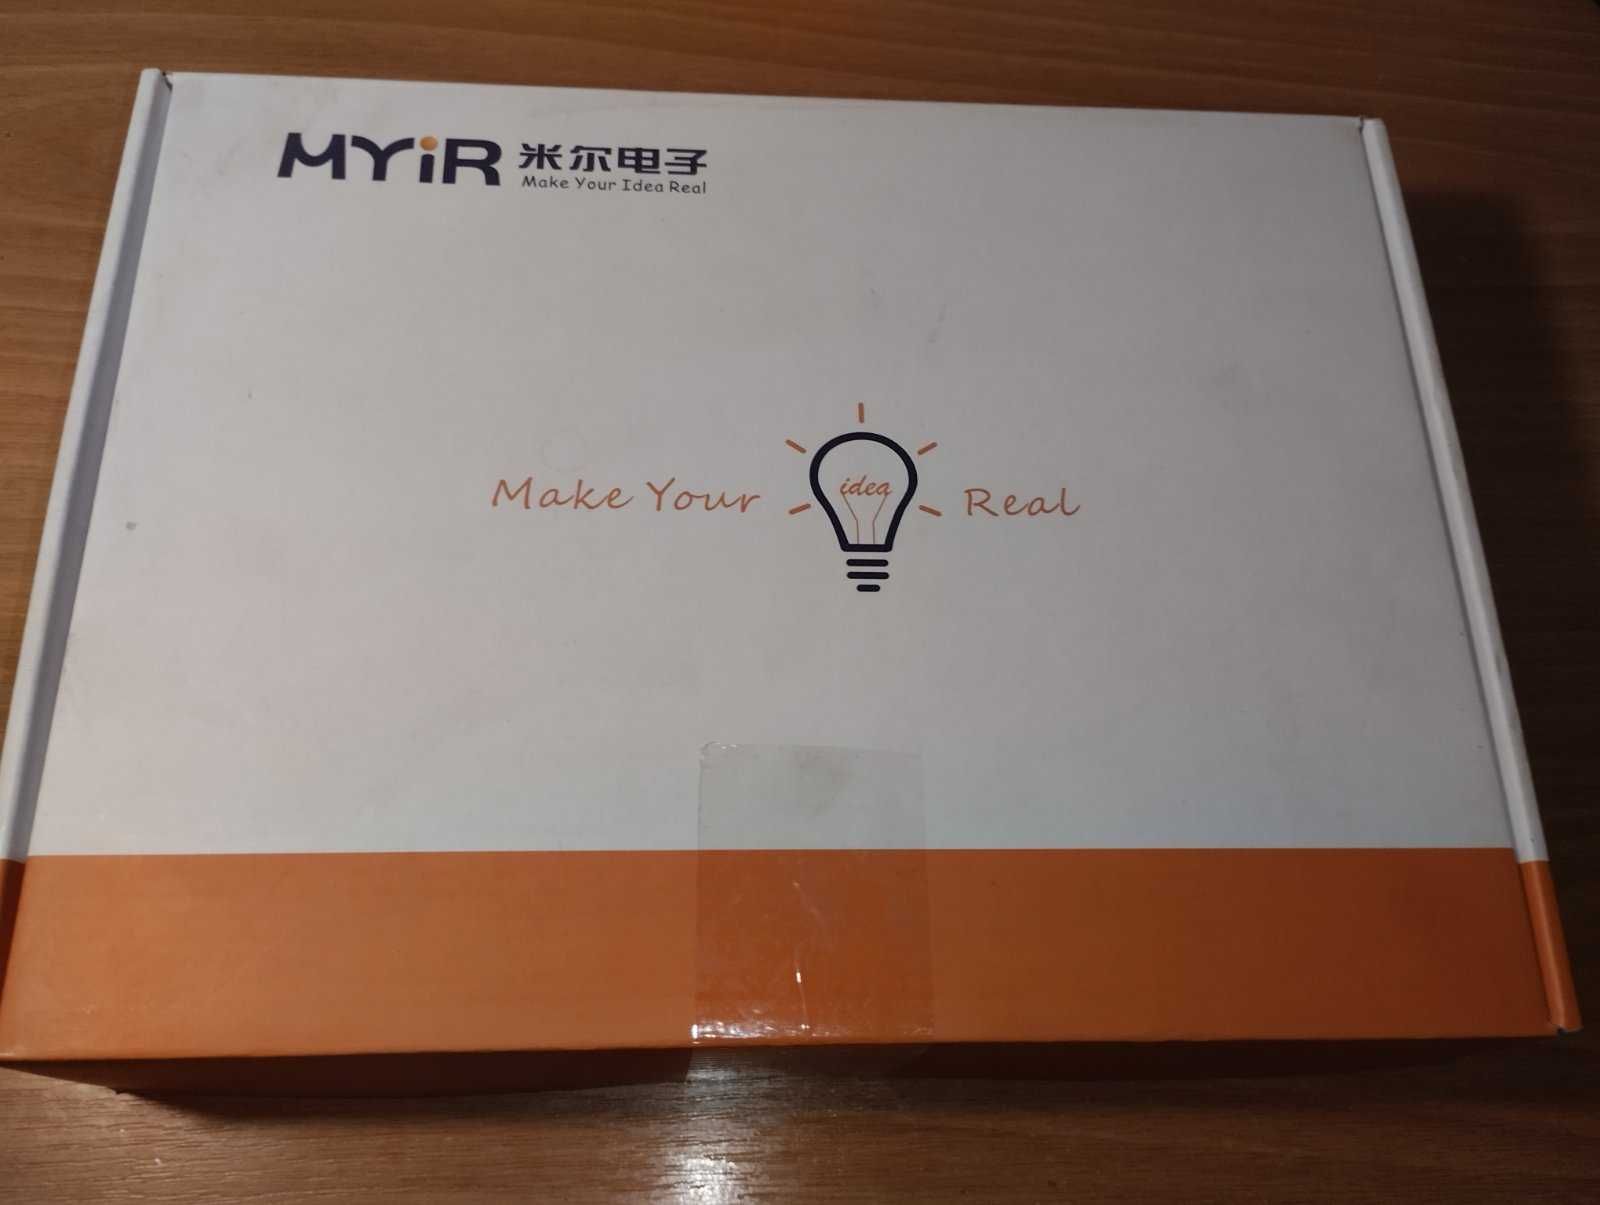 MYIR kit с SOM модулем на базе NXP i.MX6UL